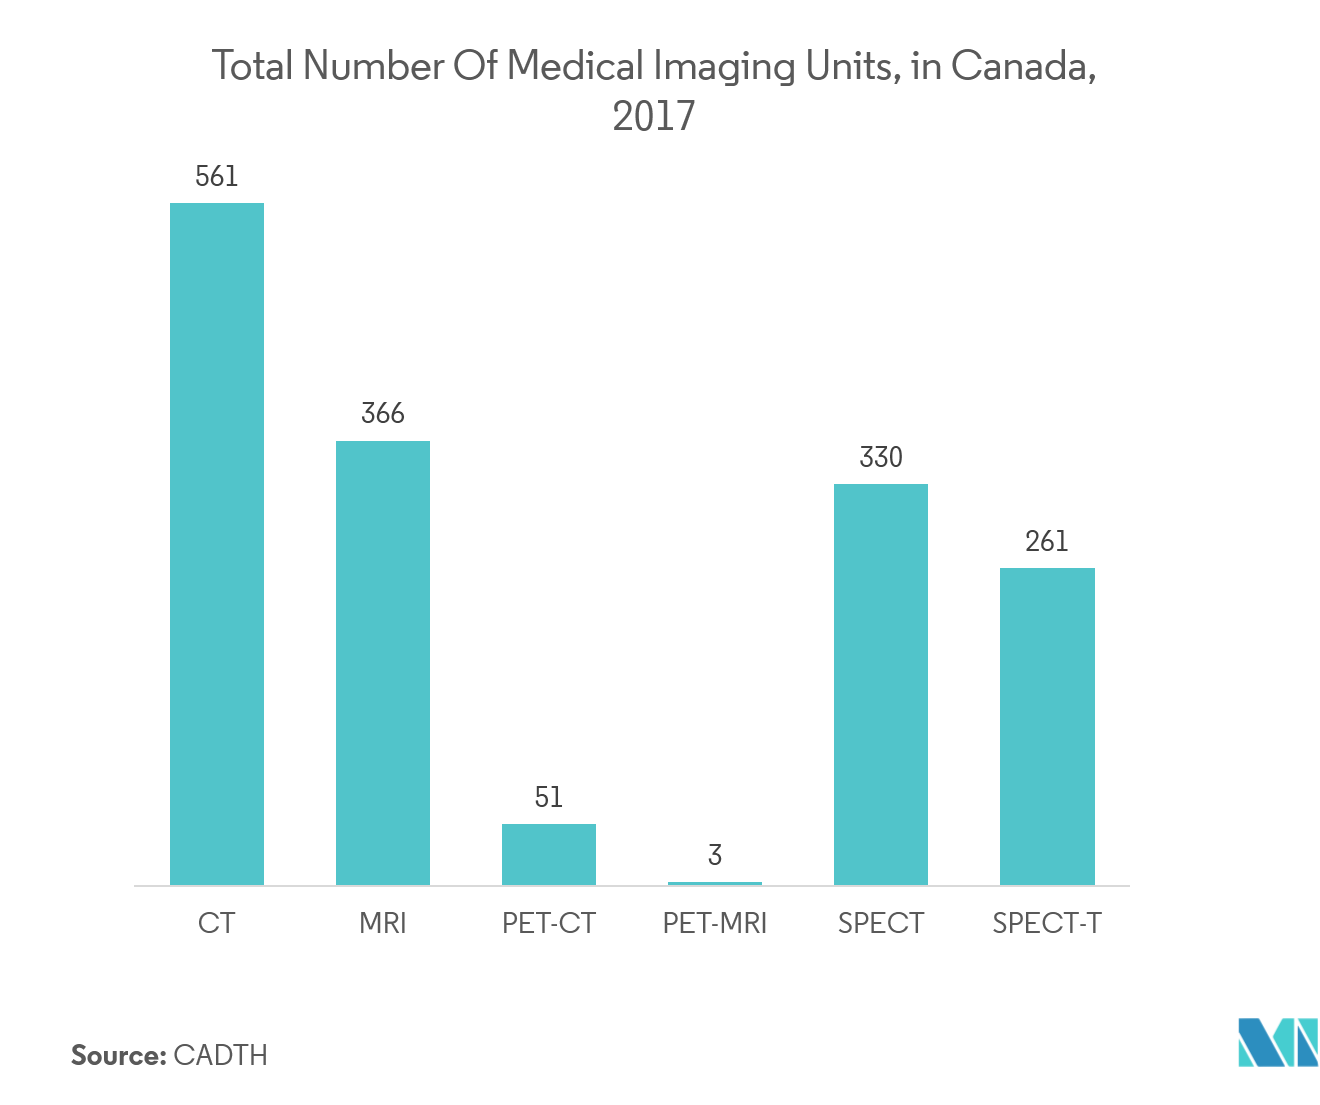 Markt für volumetrische Displays Gesamtzahl der medizinischen Bildgebungseinheiten in Kanada, 2017